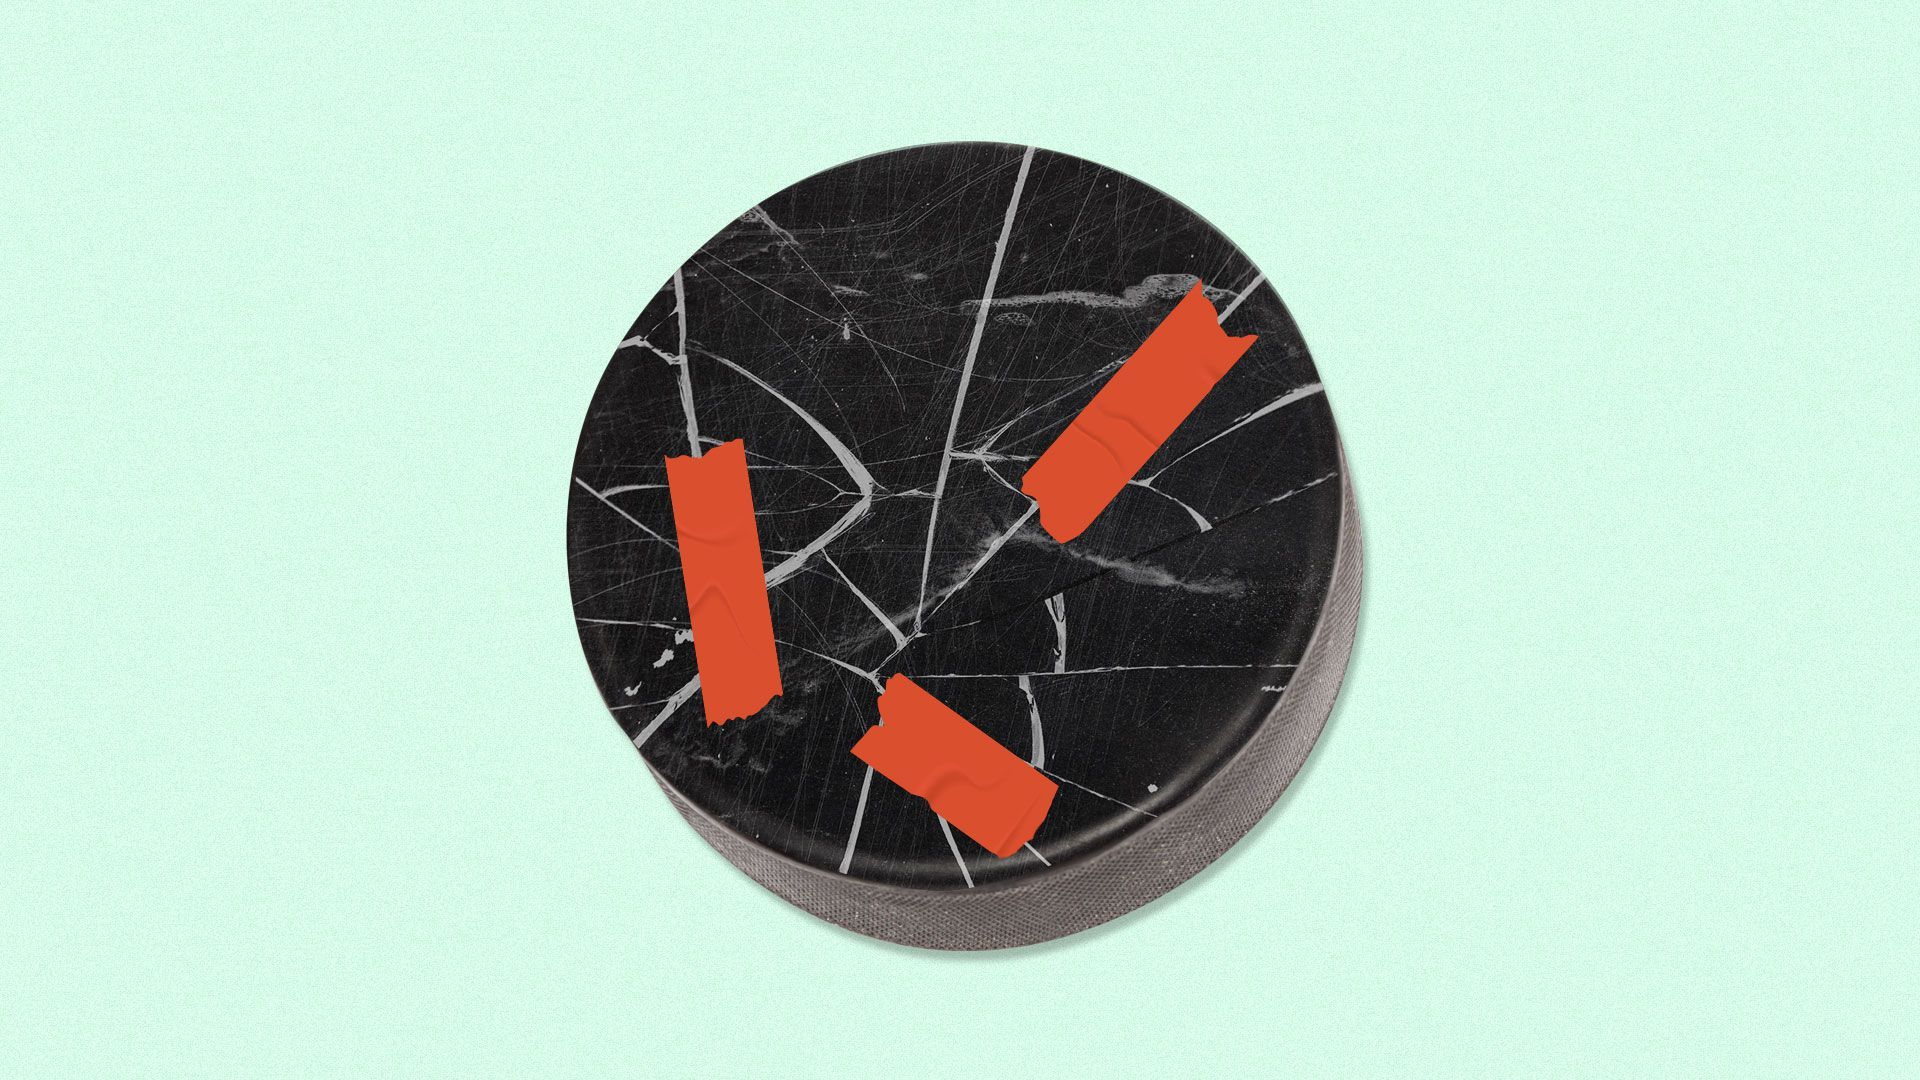 Illustration of a broken hockey puck